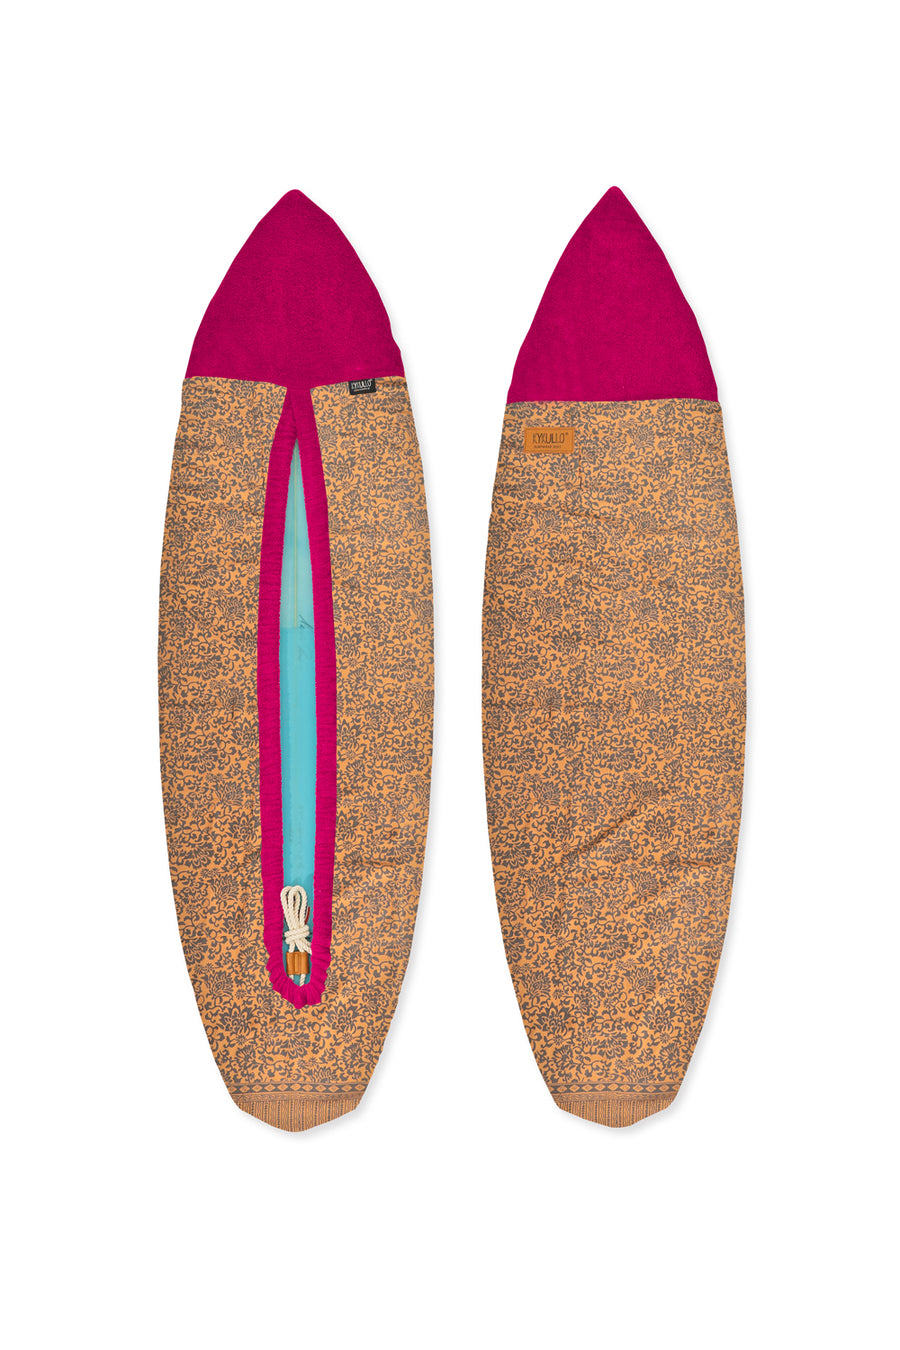 SURFWRAP 5'10 - FUXIA (RETAIL)